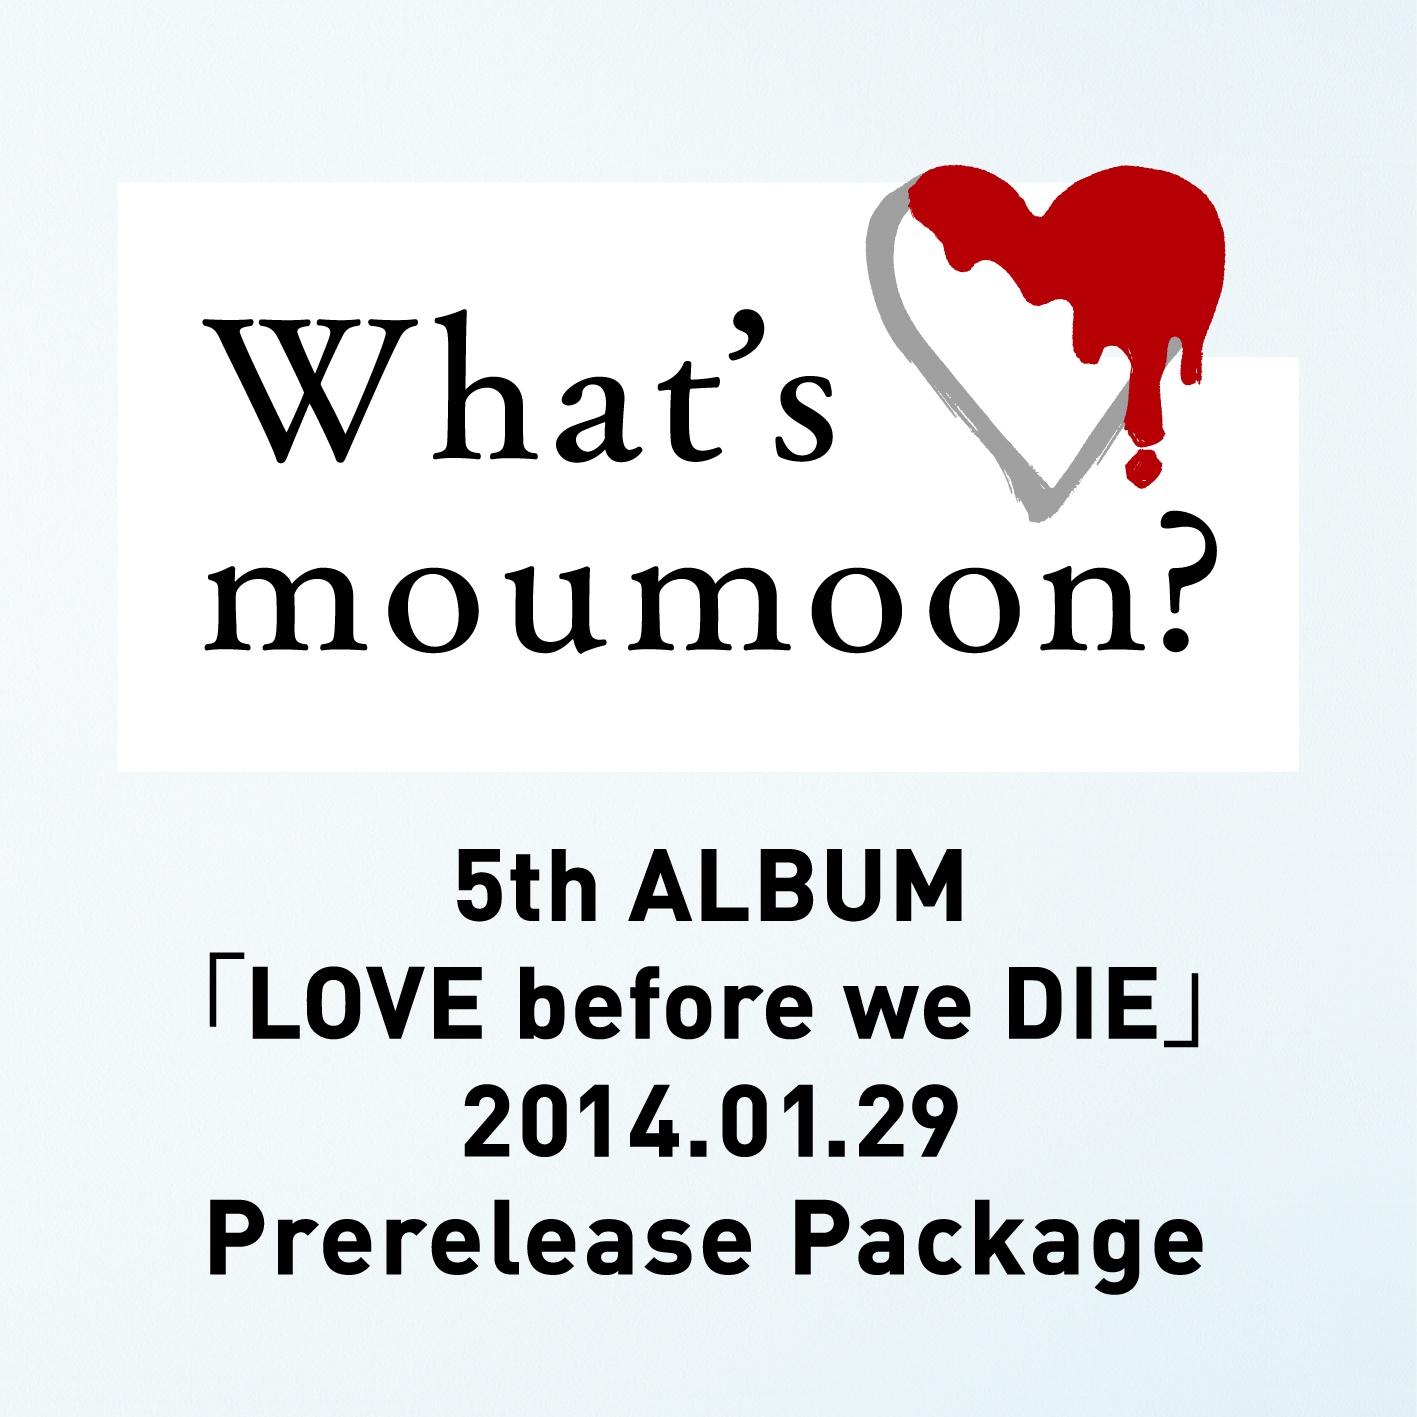 What' s moumoon? 5th ALBUM LOVE before we DIE 2014. 1. 29 Prerelease Package